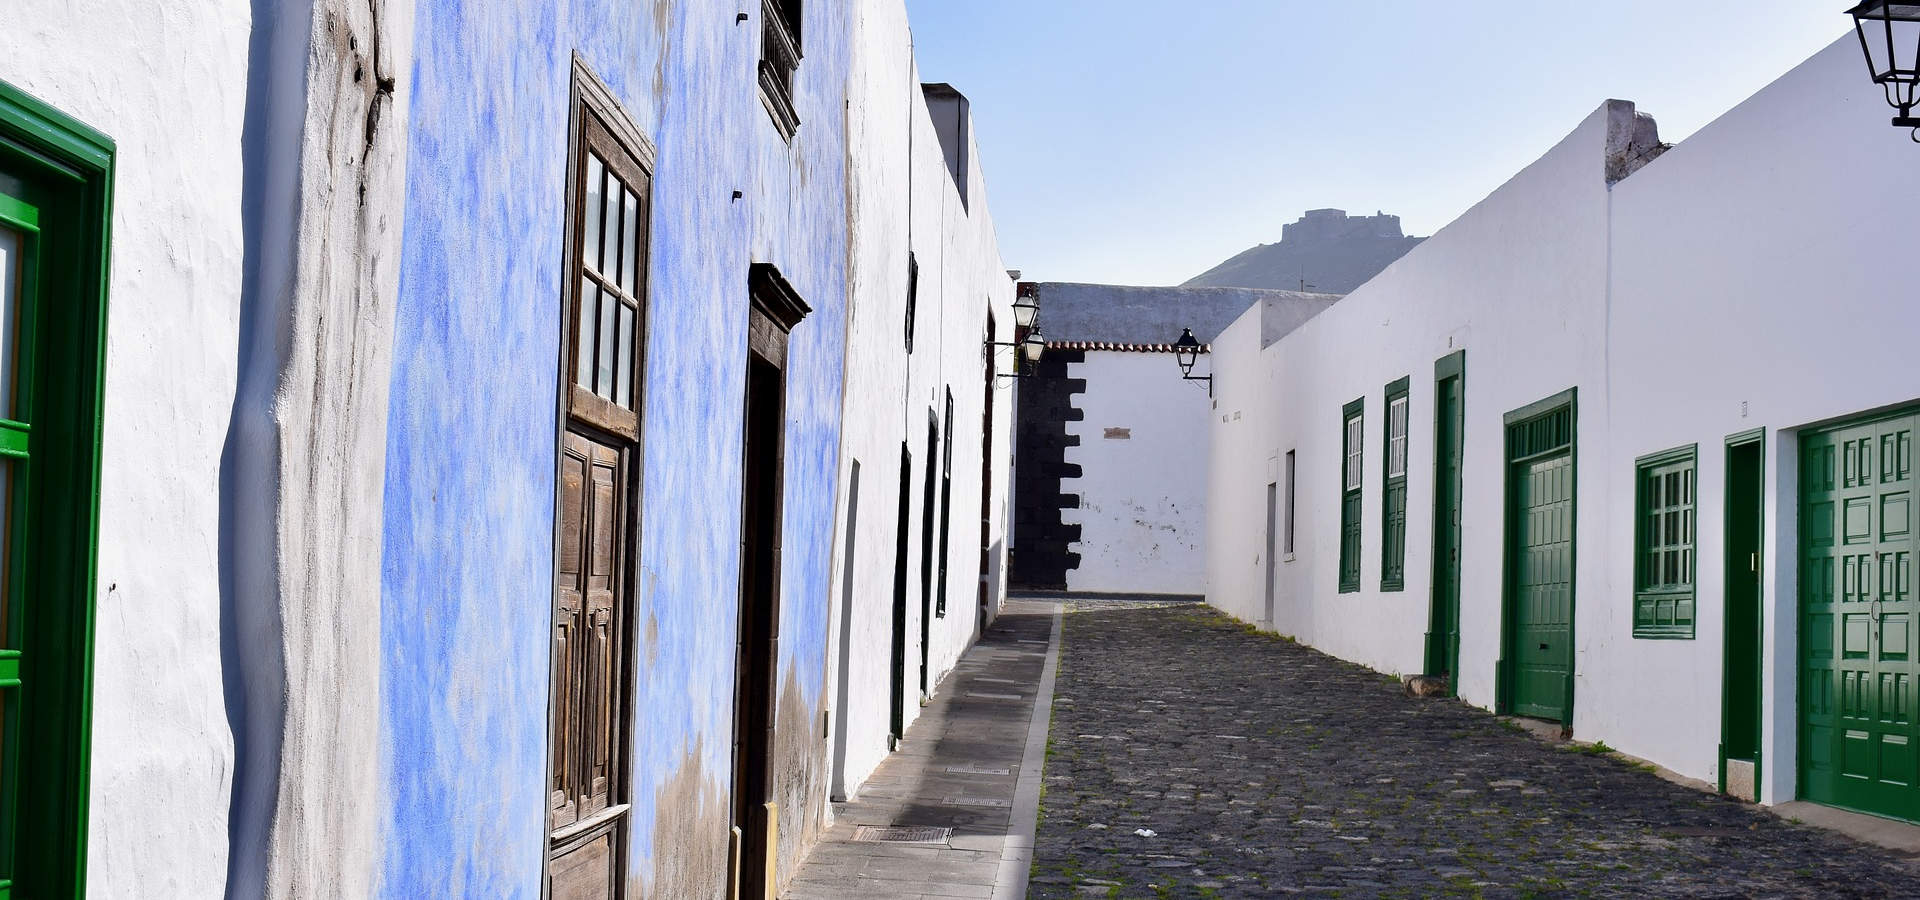 Inmobiliarias Lanzarote. Propiedades en exclusiva en Lanzarote